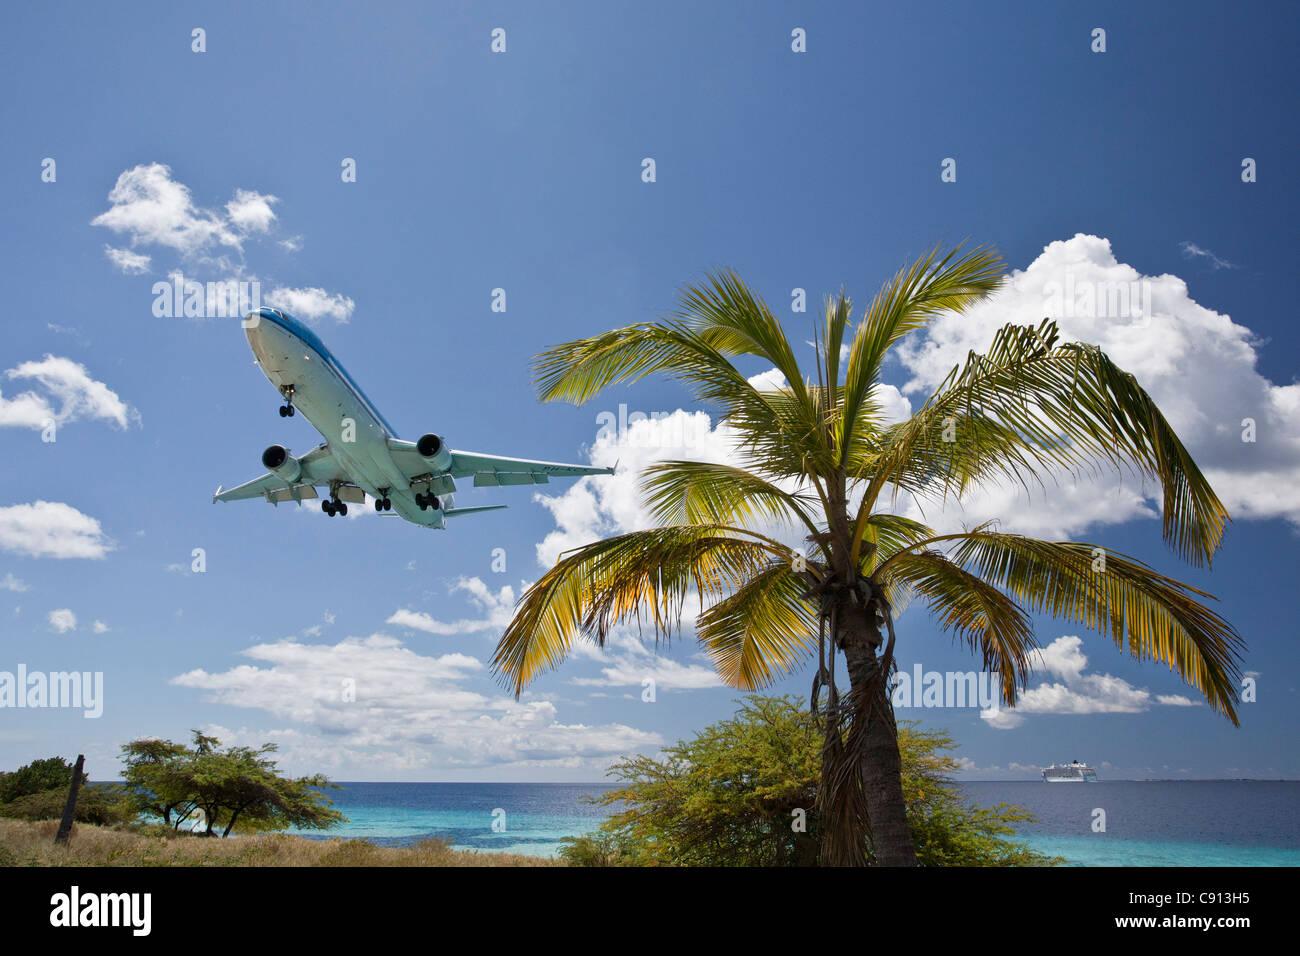 Der Niederlande, Insel Bonaire, Niederländische Karibik, Kralendijk, KLM Douglas DC-10 Flugzeug landet auf dem Flughafen Flamingo. Stockfoto